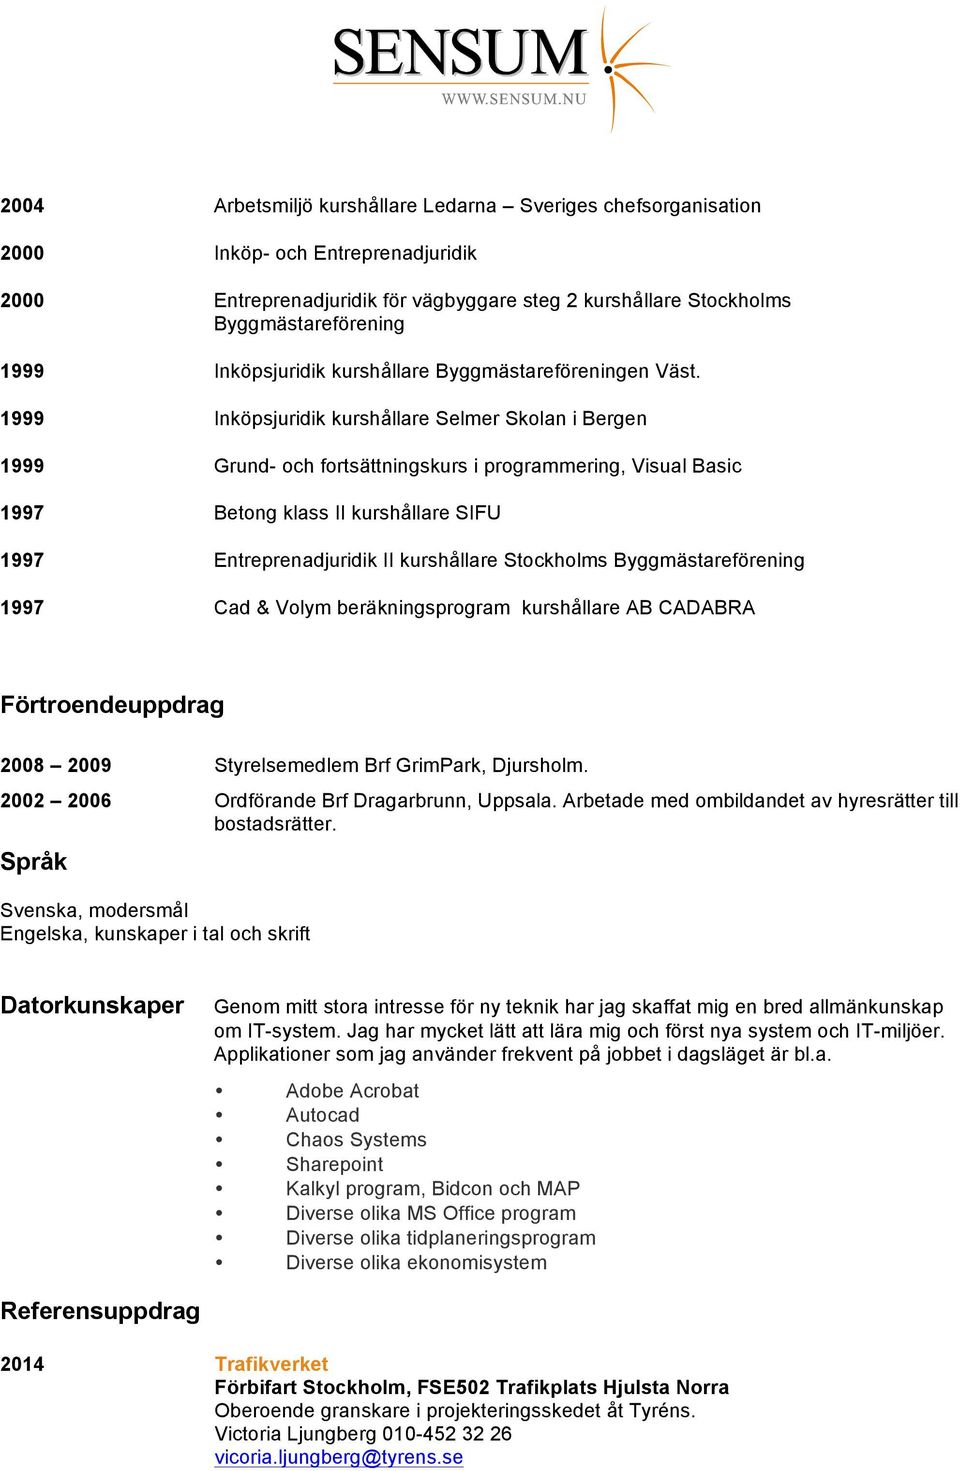 1999 Inköpsjuridik kurshållare Selmer Skolan i Bergen 1999 Grund- och fortsättningskurs i programmering, Visual Basic 1997 Betong klass II kurshållare SIFU 1997 Entreprenadjuridik II kurshållare